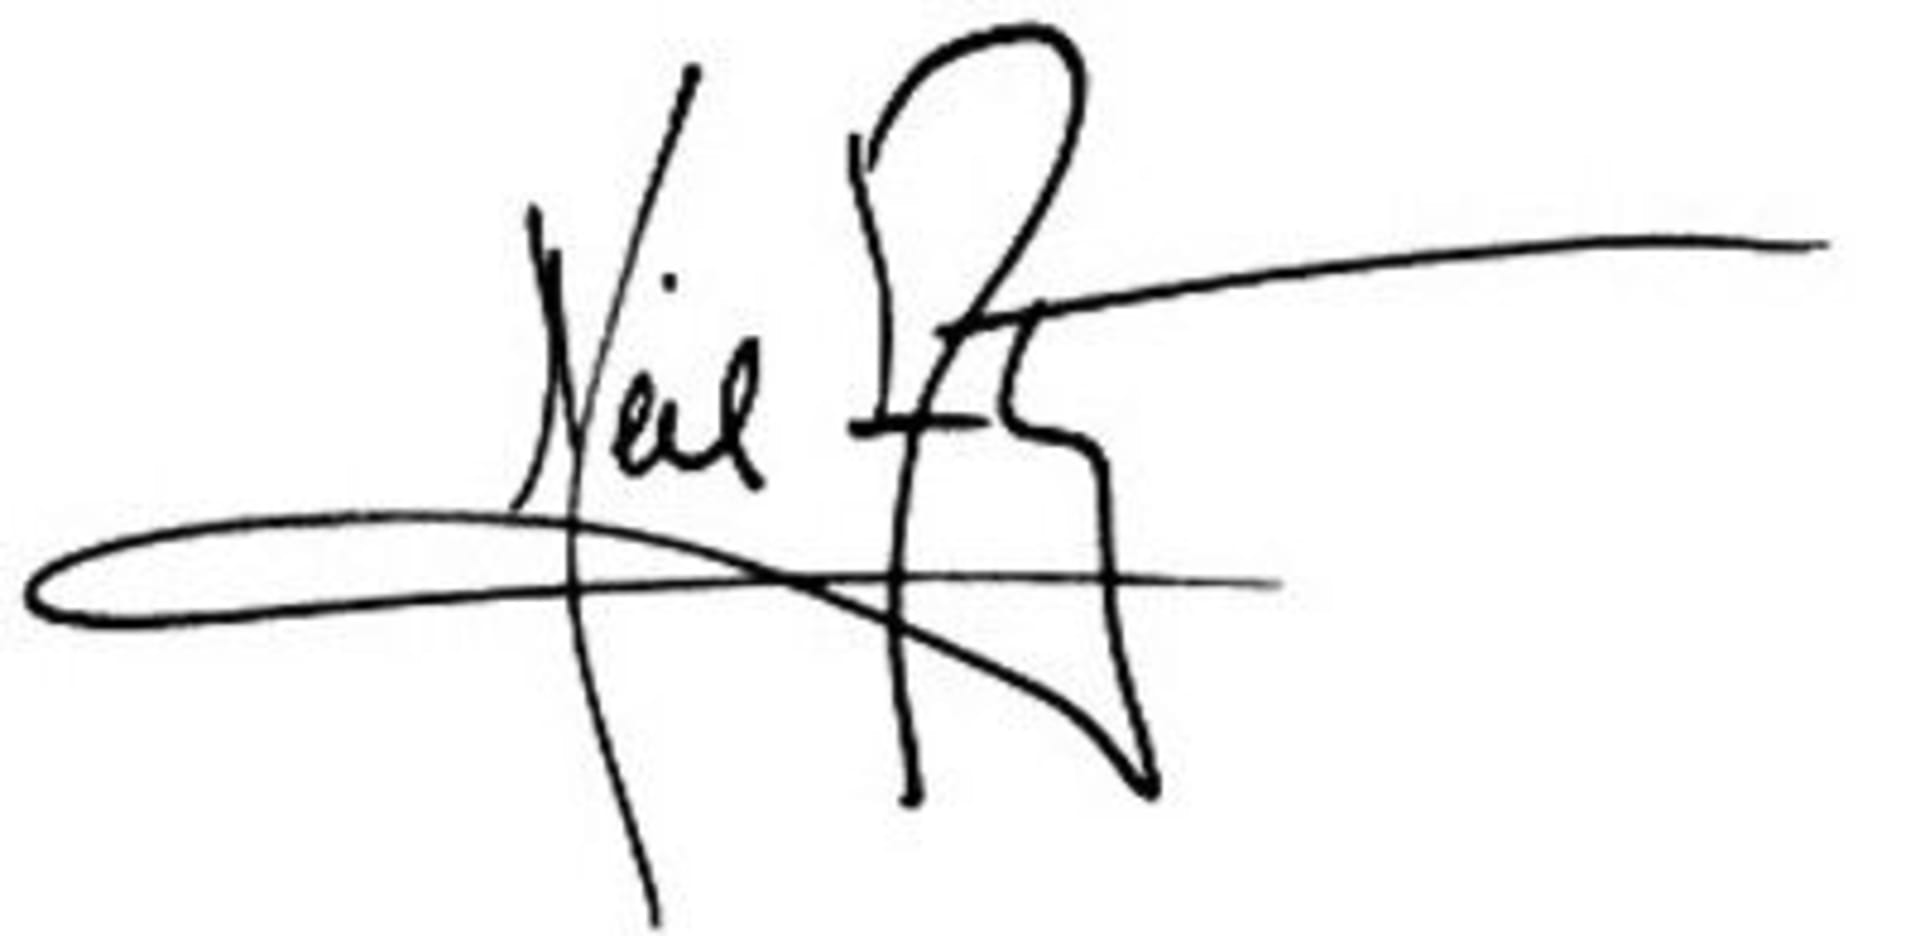 Částečně čitelný podpis - Neil Armstrong